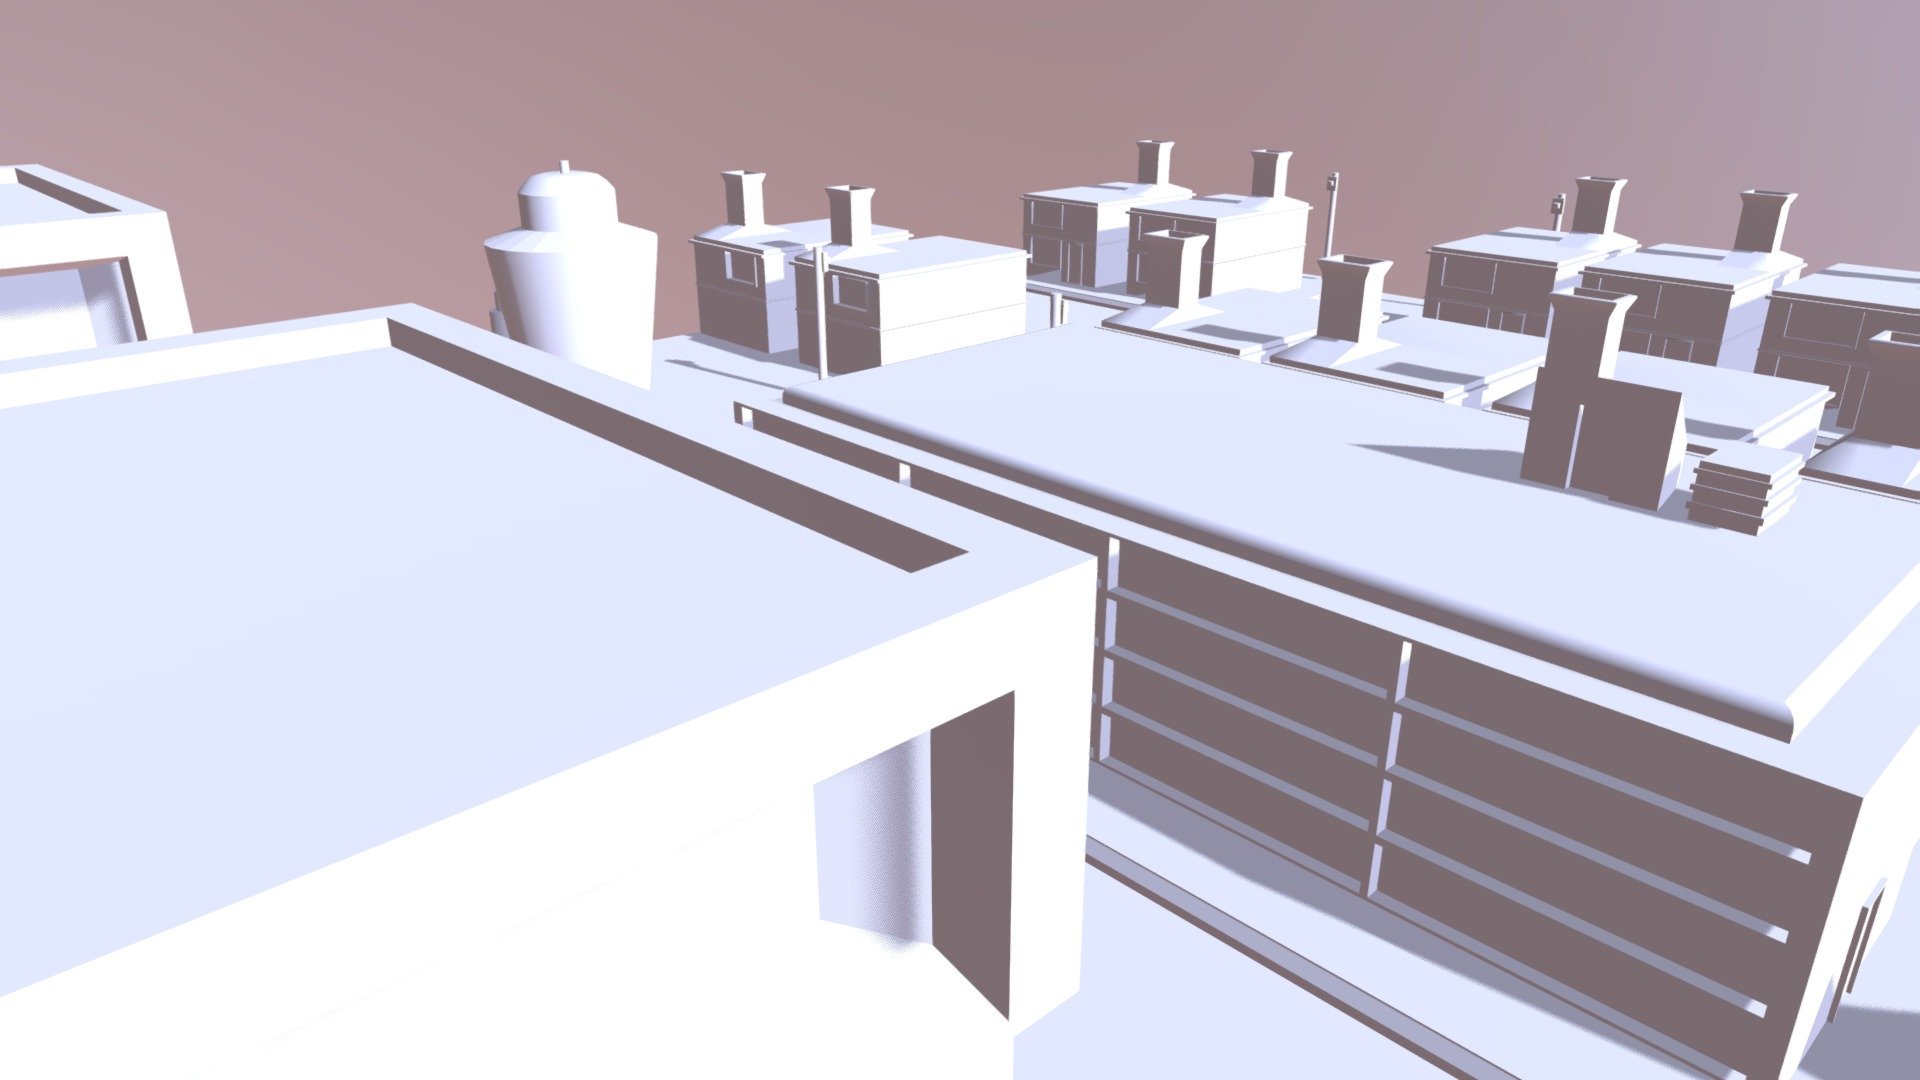 Small city street scene - City Scene - 3D model by Hunter780 3d model